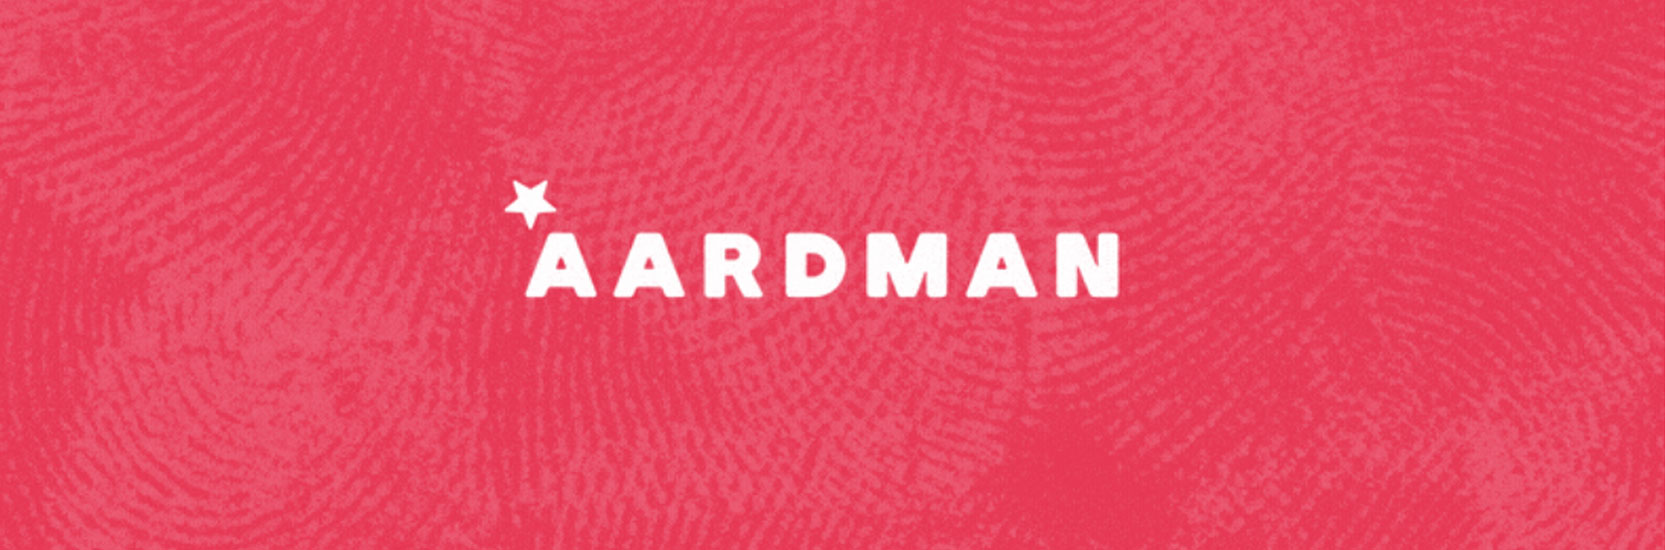 Nouveau logo, nouveau site : Aardman fait peau neuve !